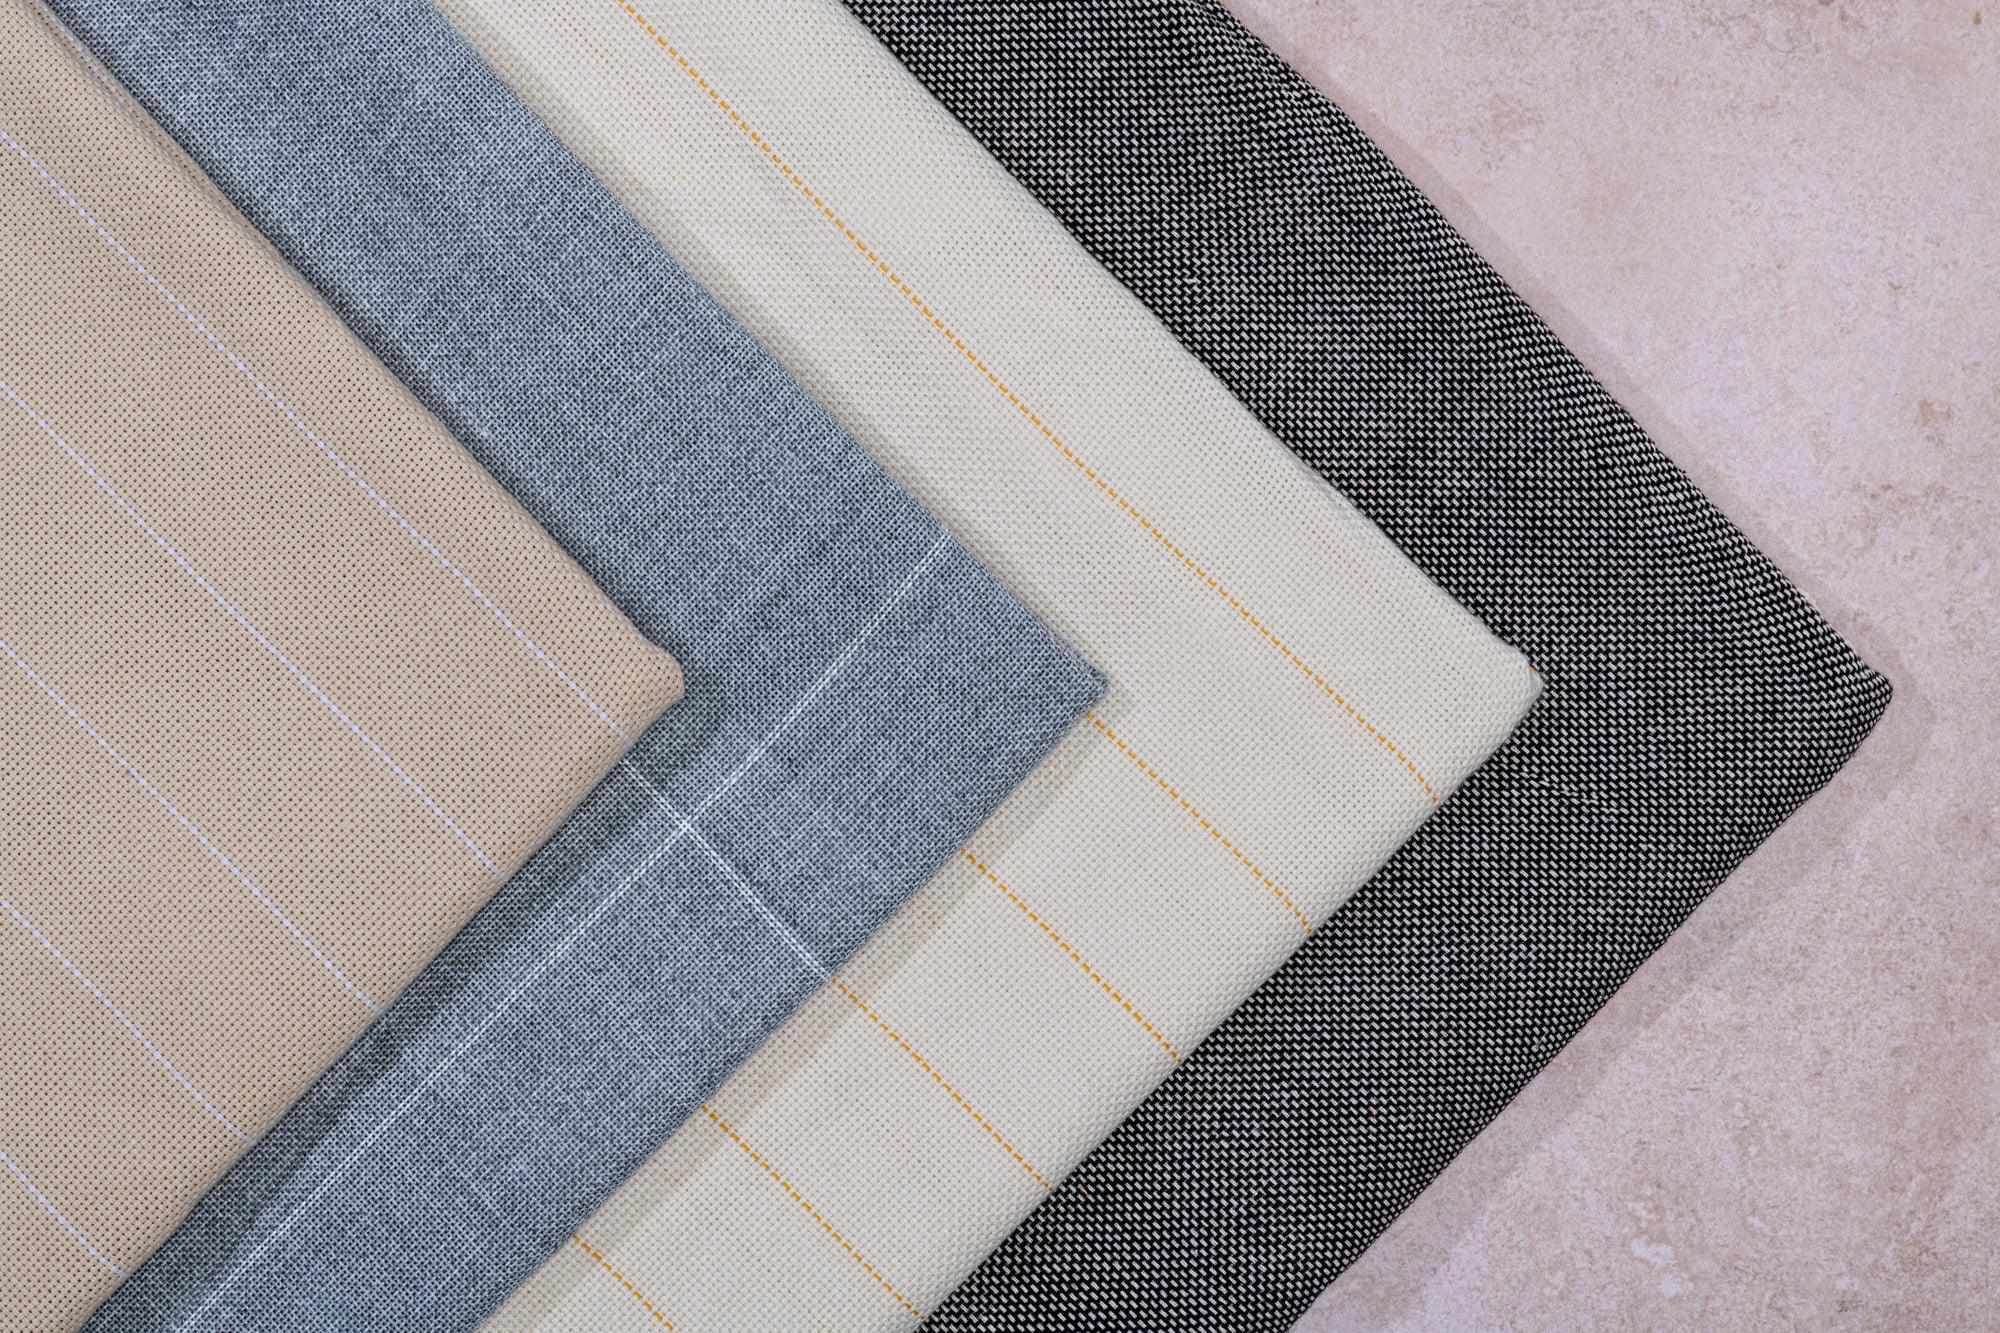 Comparing backing fabrics – Tuftingshop